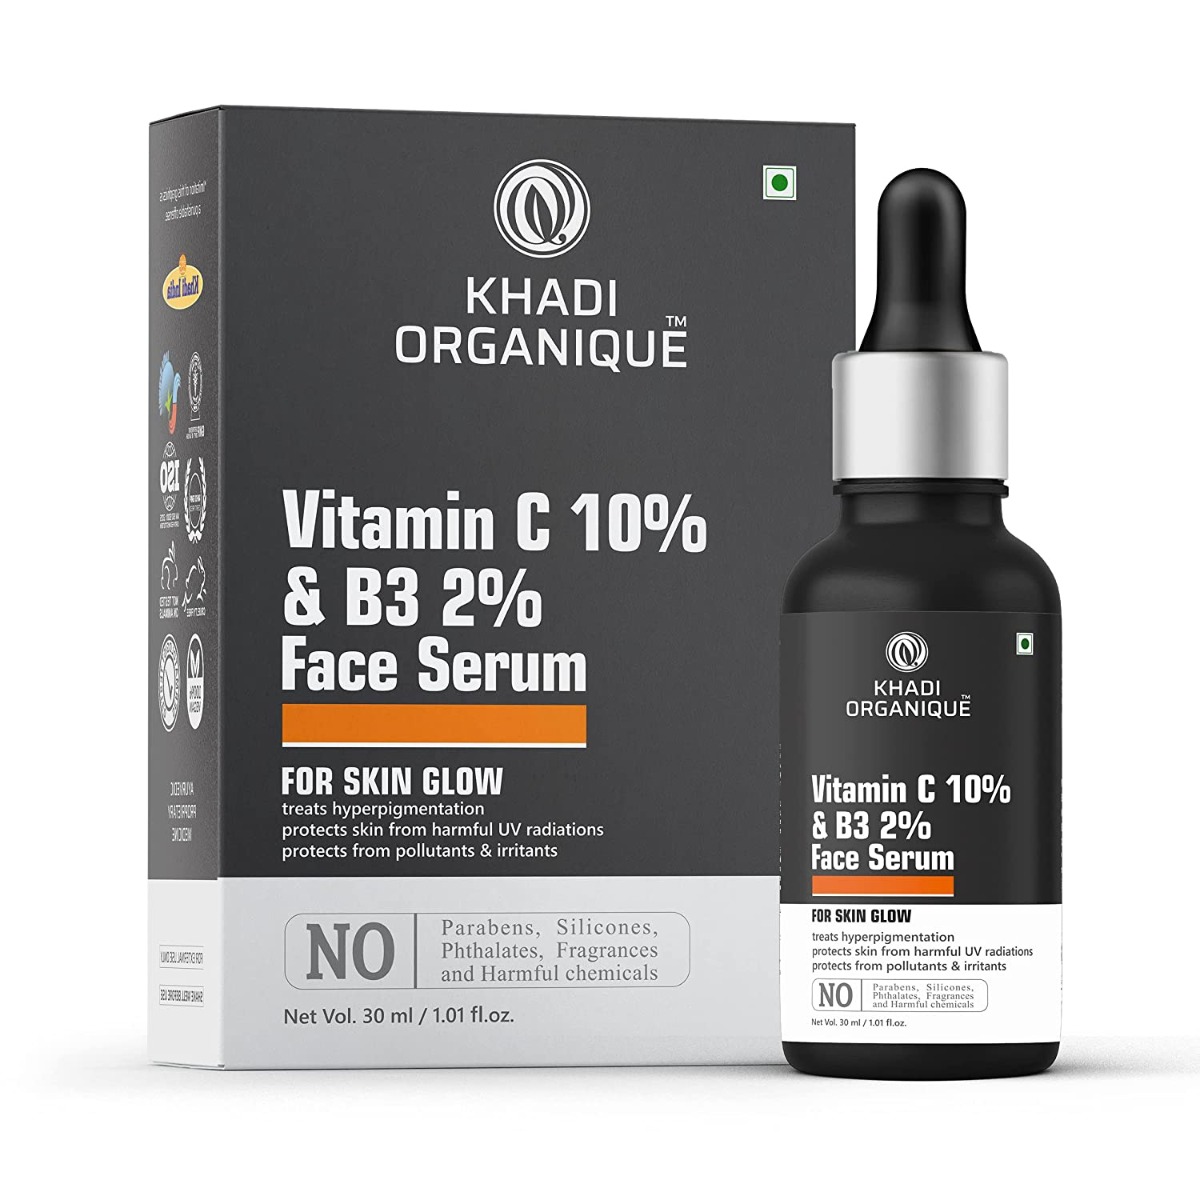 Khadi Organique Vitamin C 10% & B3 2% Face Serum, 30ml